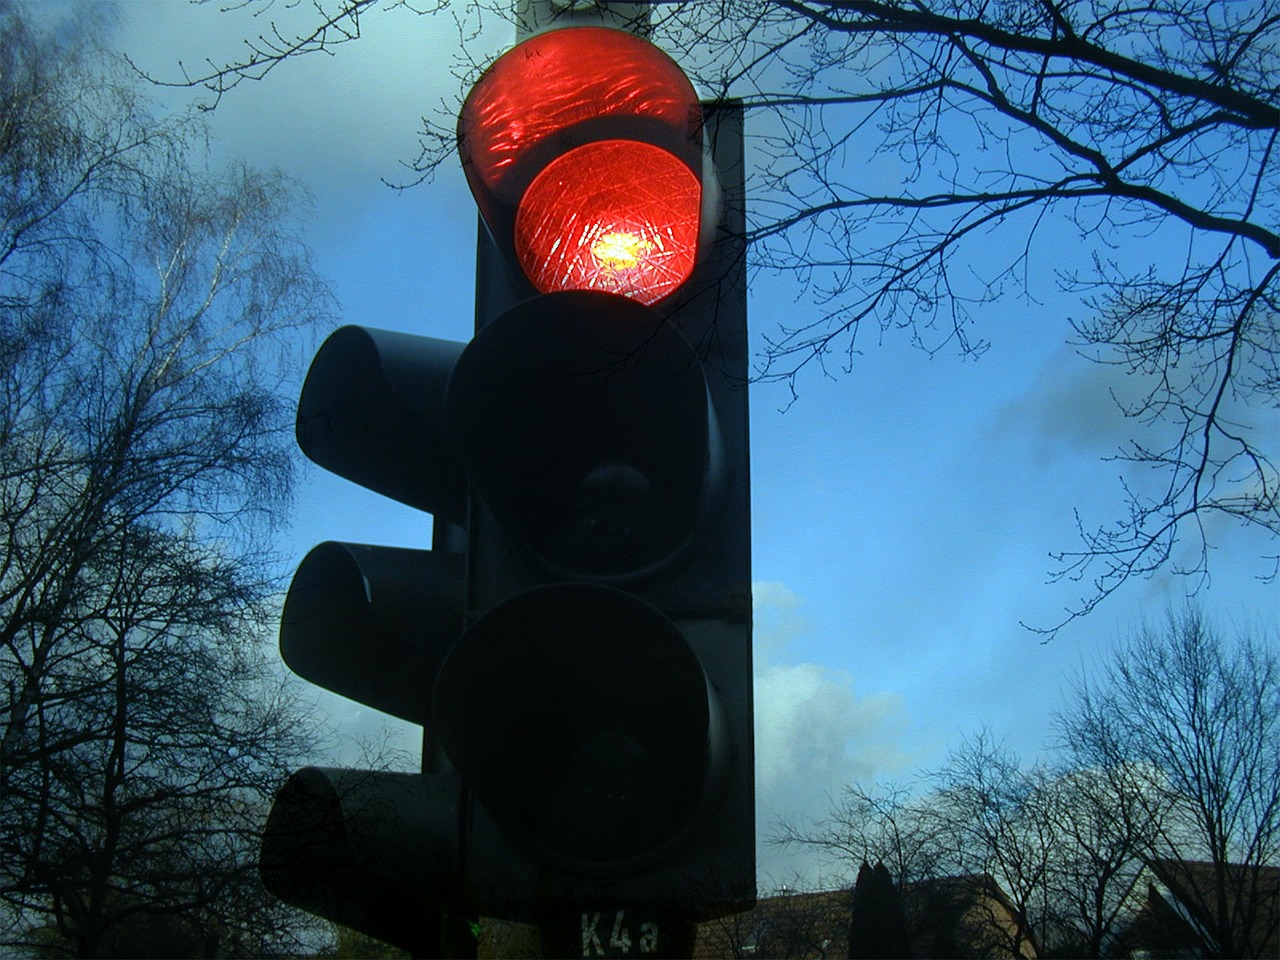 Οδήγηση στη Γερμανία: Μπορείτε να παραβιάσετε τον κόκκινο σηματοδότη εάν είναι χαλασμένος; Δείτε τι ισχύει αναλυτικά